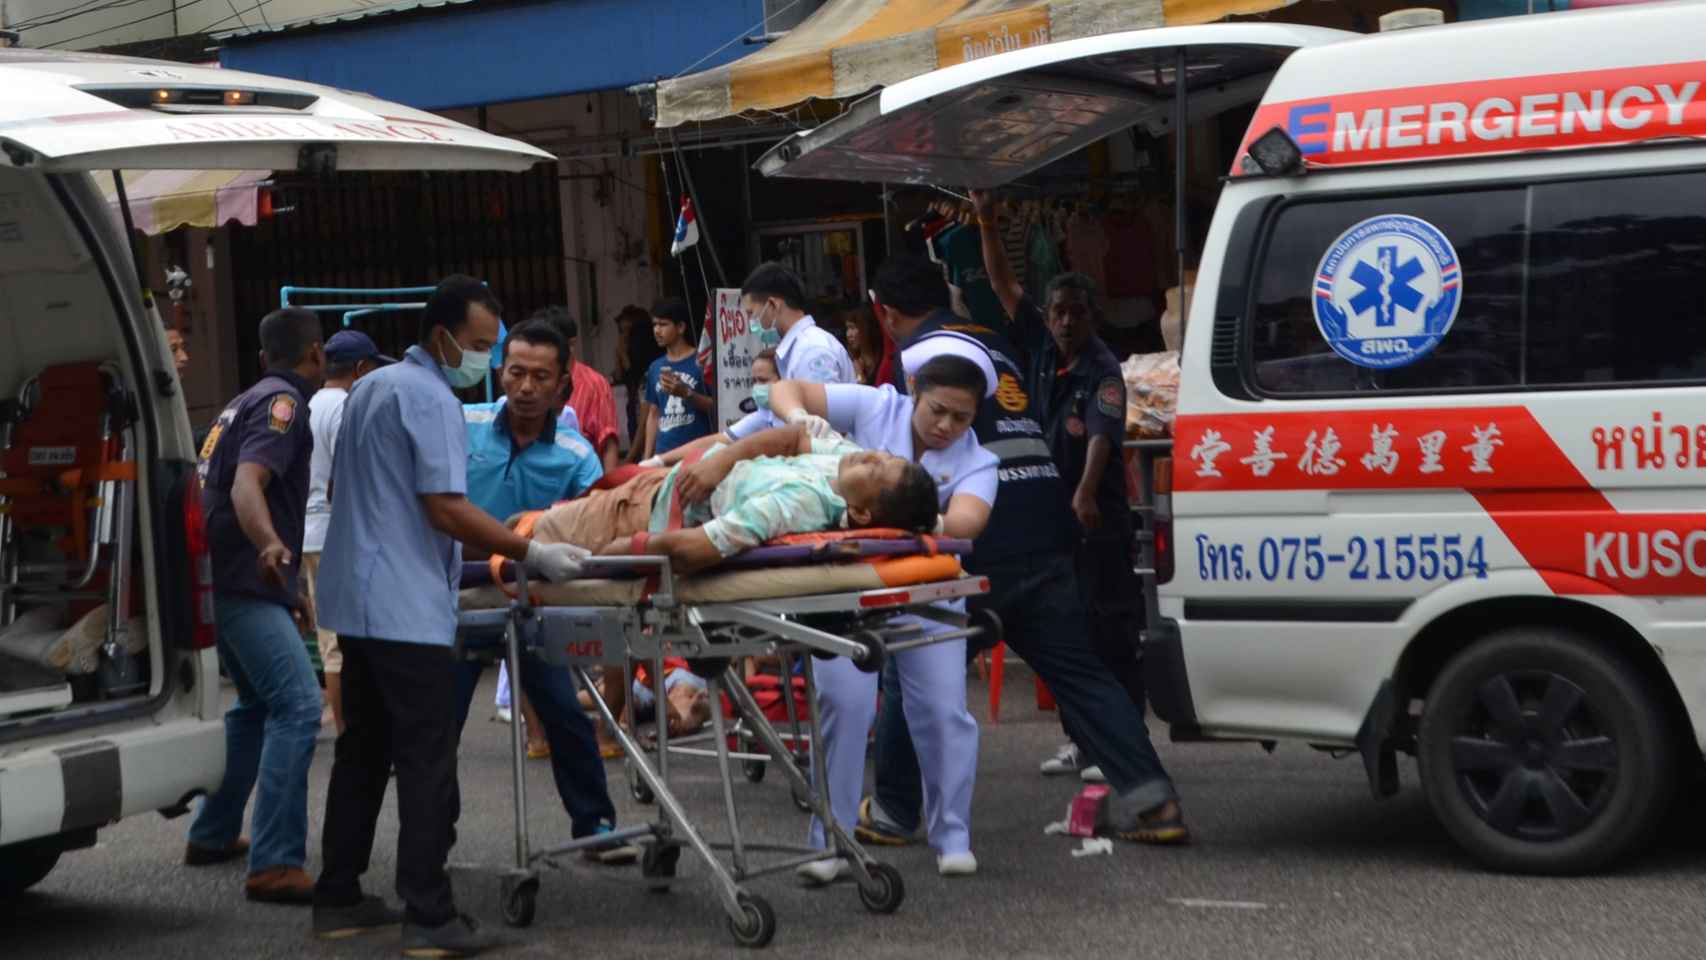 Al menos cuatro muertos y una decena de heridos en una serie de atentados al sur de Tailandia